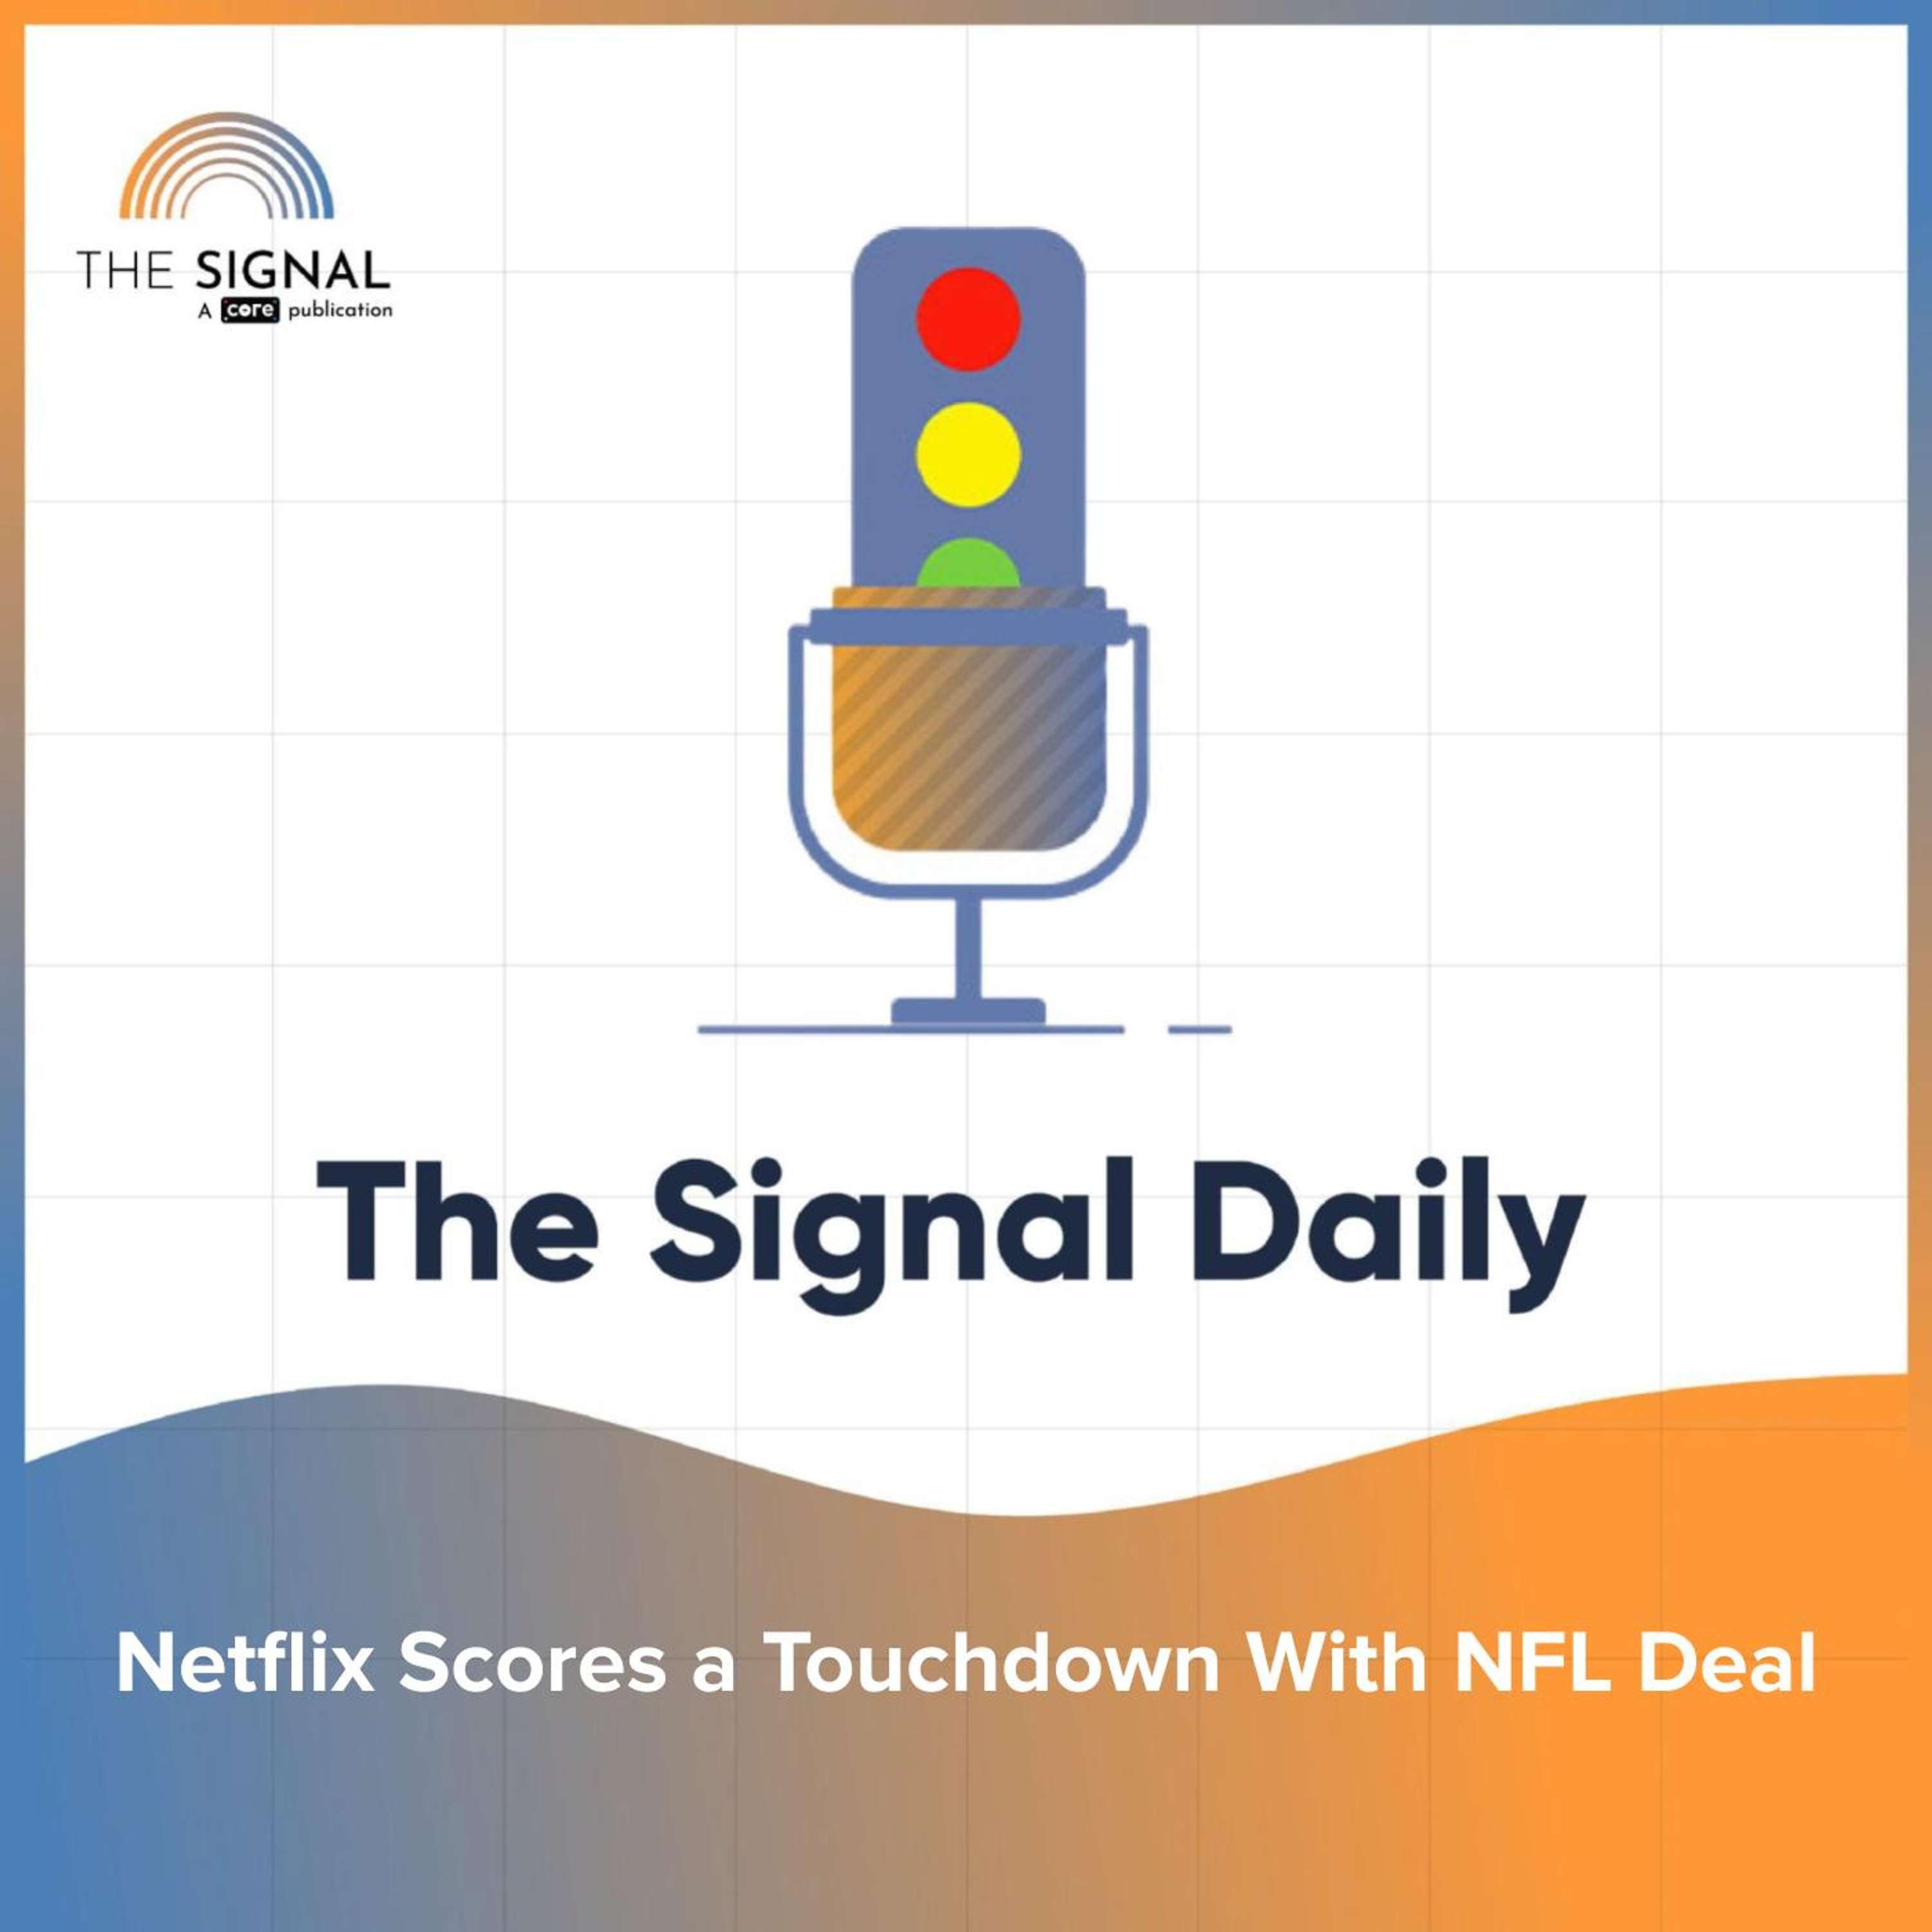 Netflix Scores a Touchdown with NFL DeaL